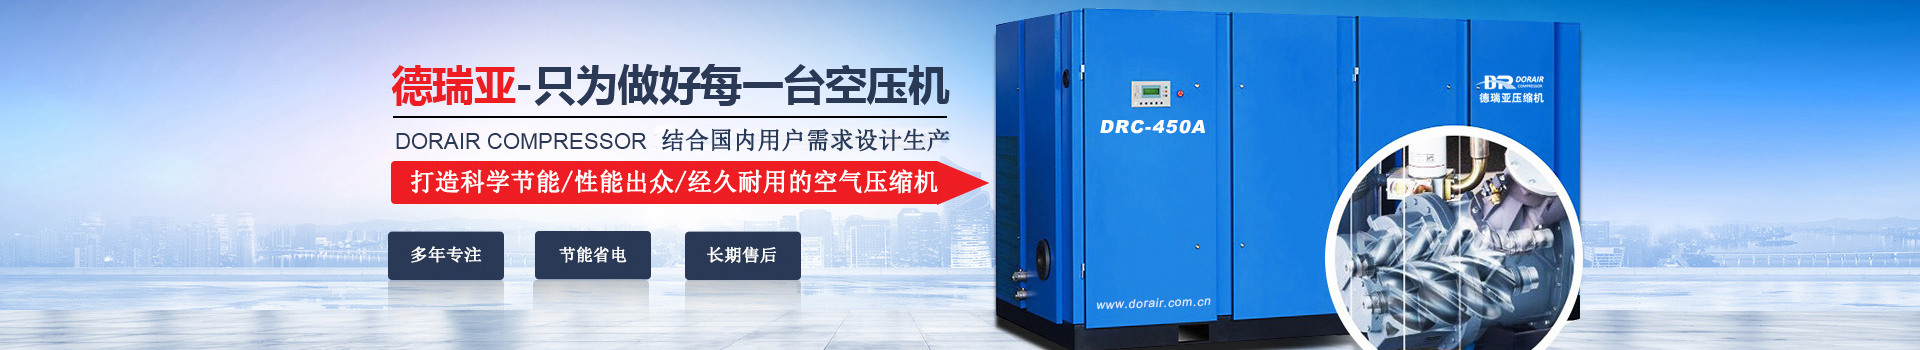 德瑞亞空壓機，中國高品質空壓機倡導者